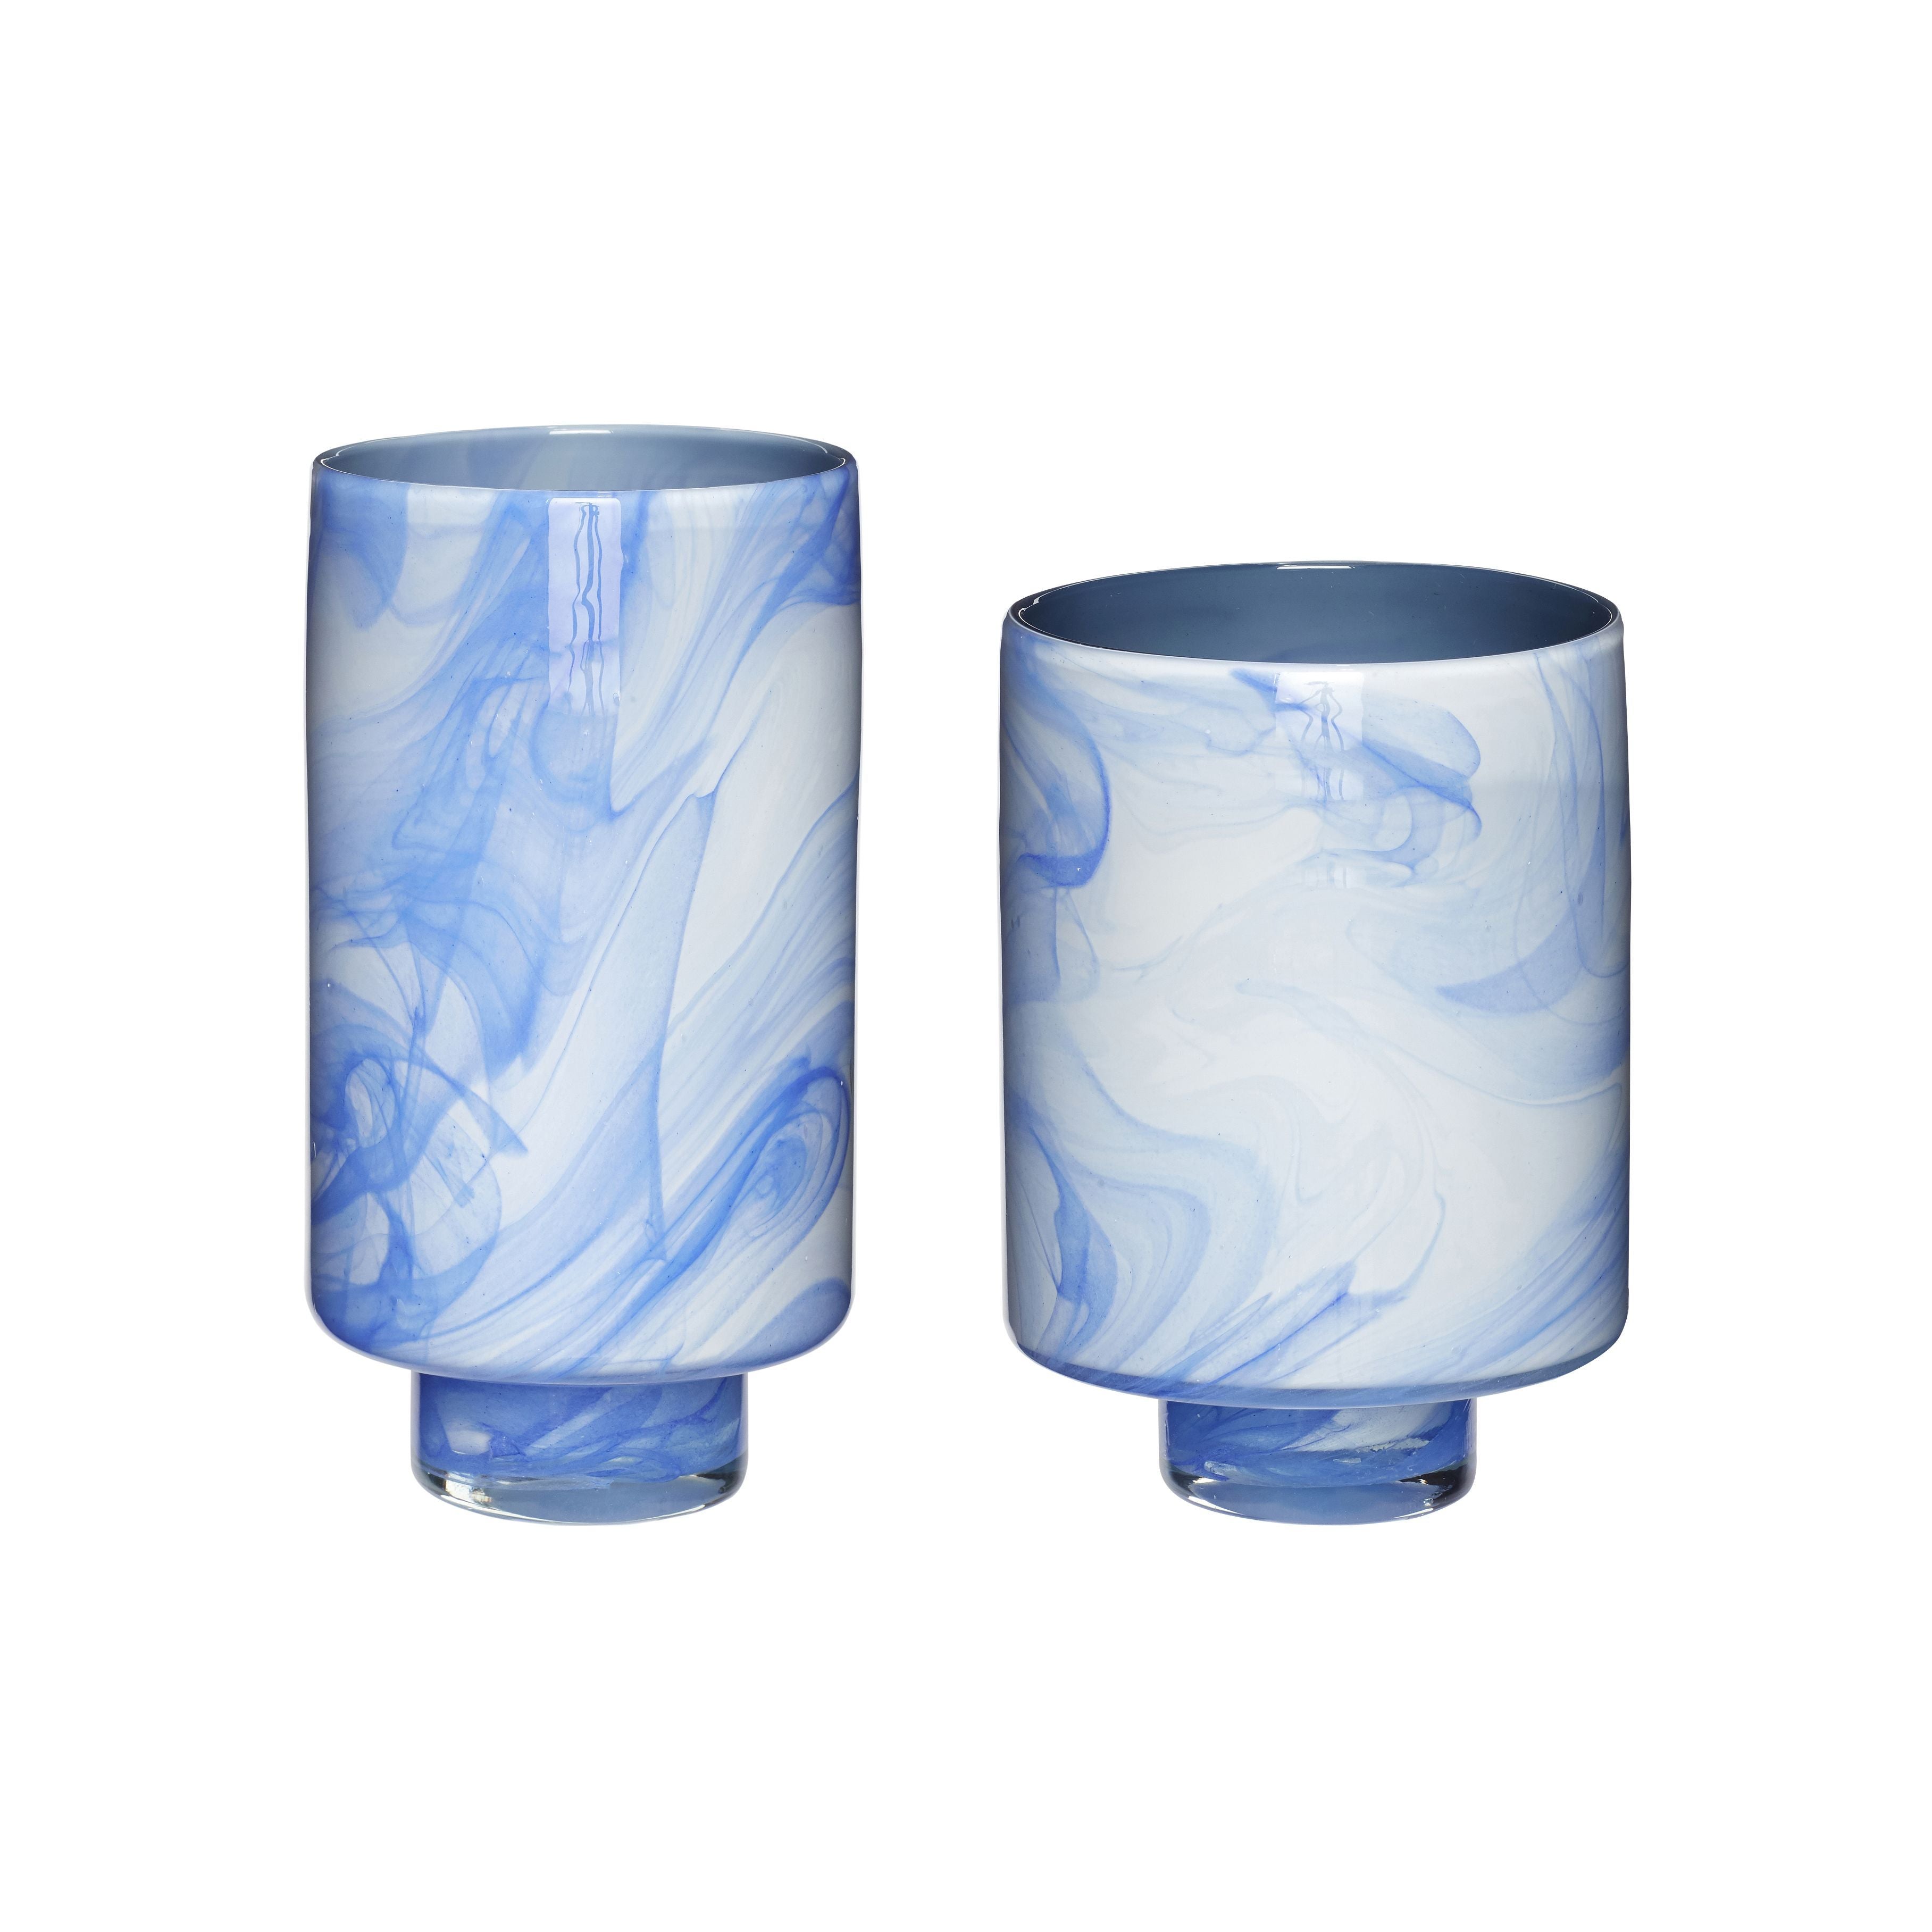 Hübsch云花瓶玻璃白/蓝色S/2